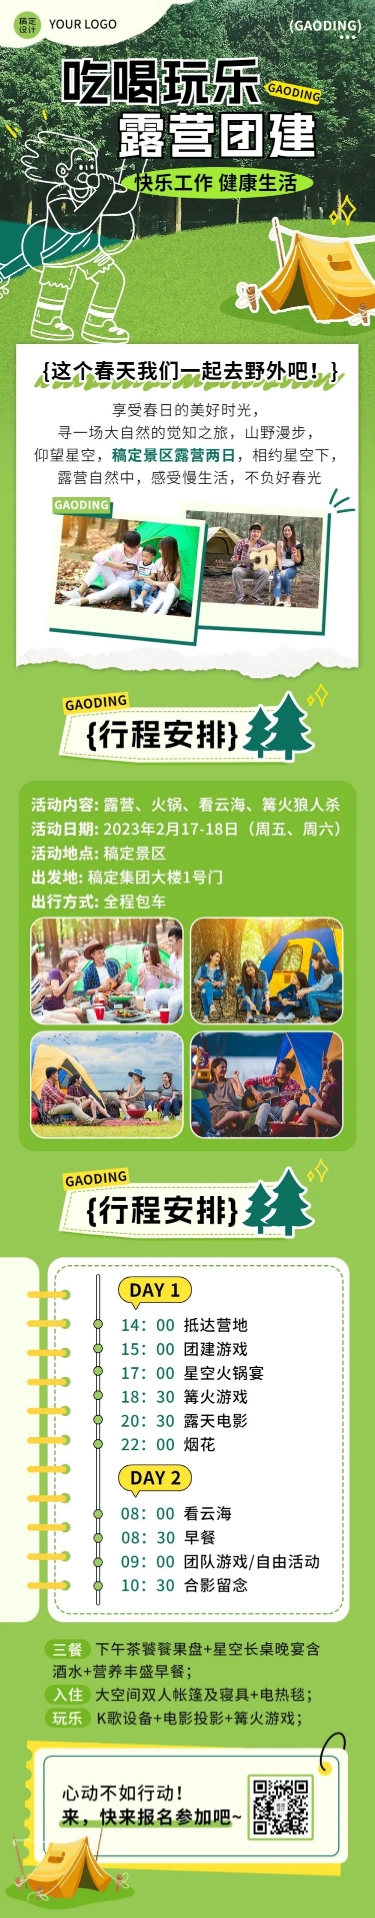 企业团建活动预告露营活动实景涂鸦文章长图